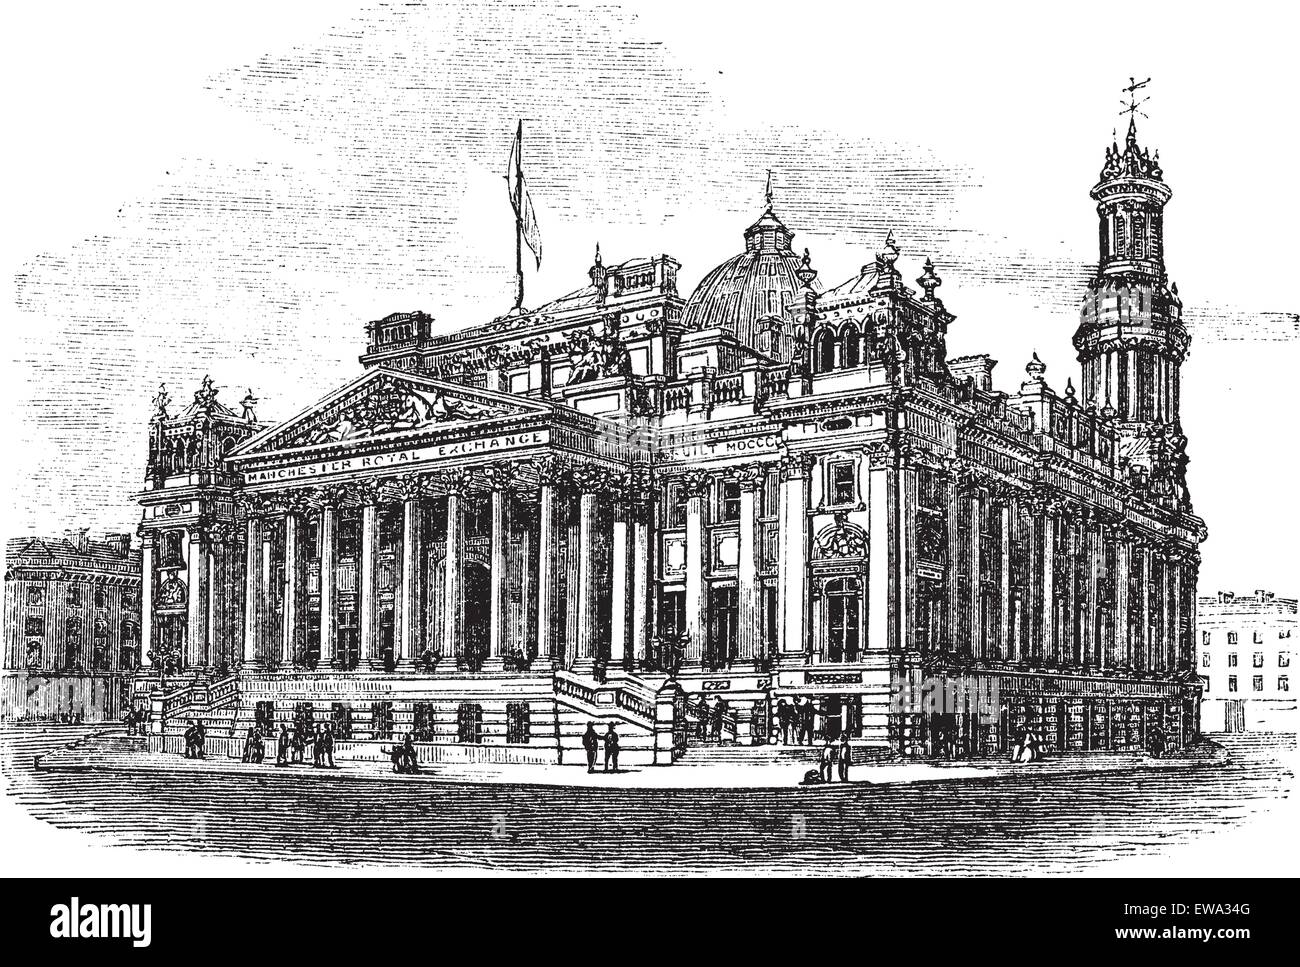 Royal Exchange à Manchester, en Angleterre, pendant les années 1890, gravure d'époque. Vieille illustration gravée du Royal Exchange. Illustration de Vecteur